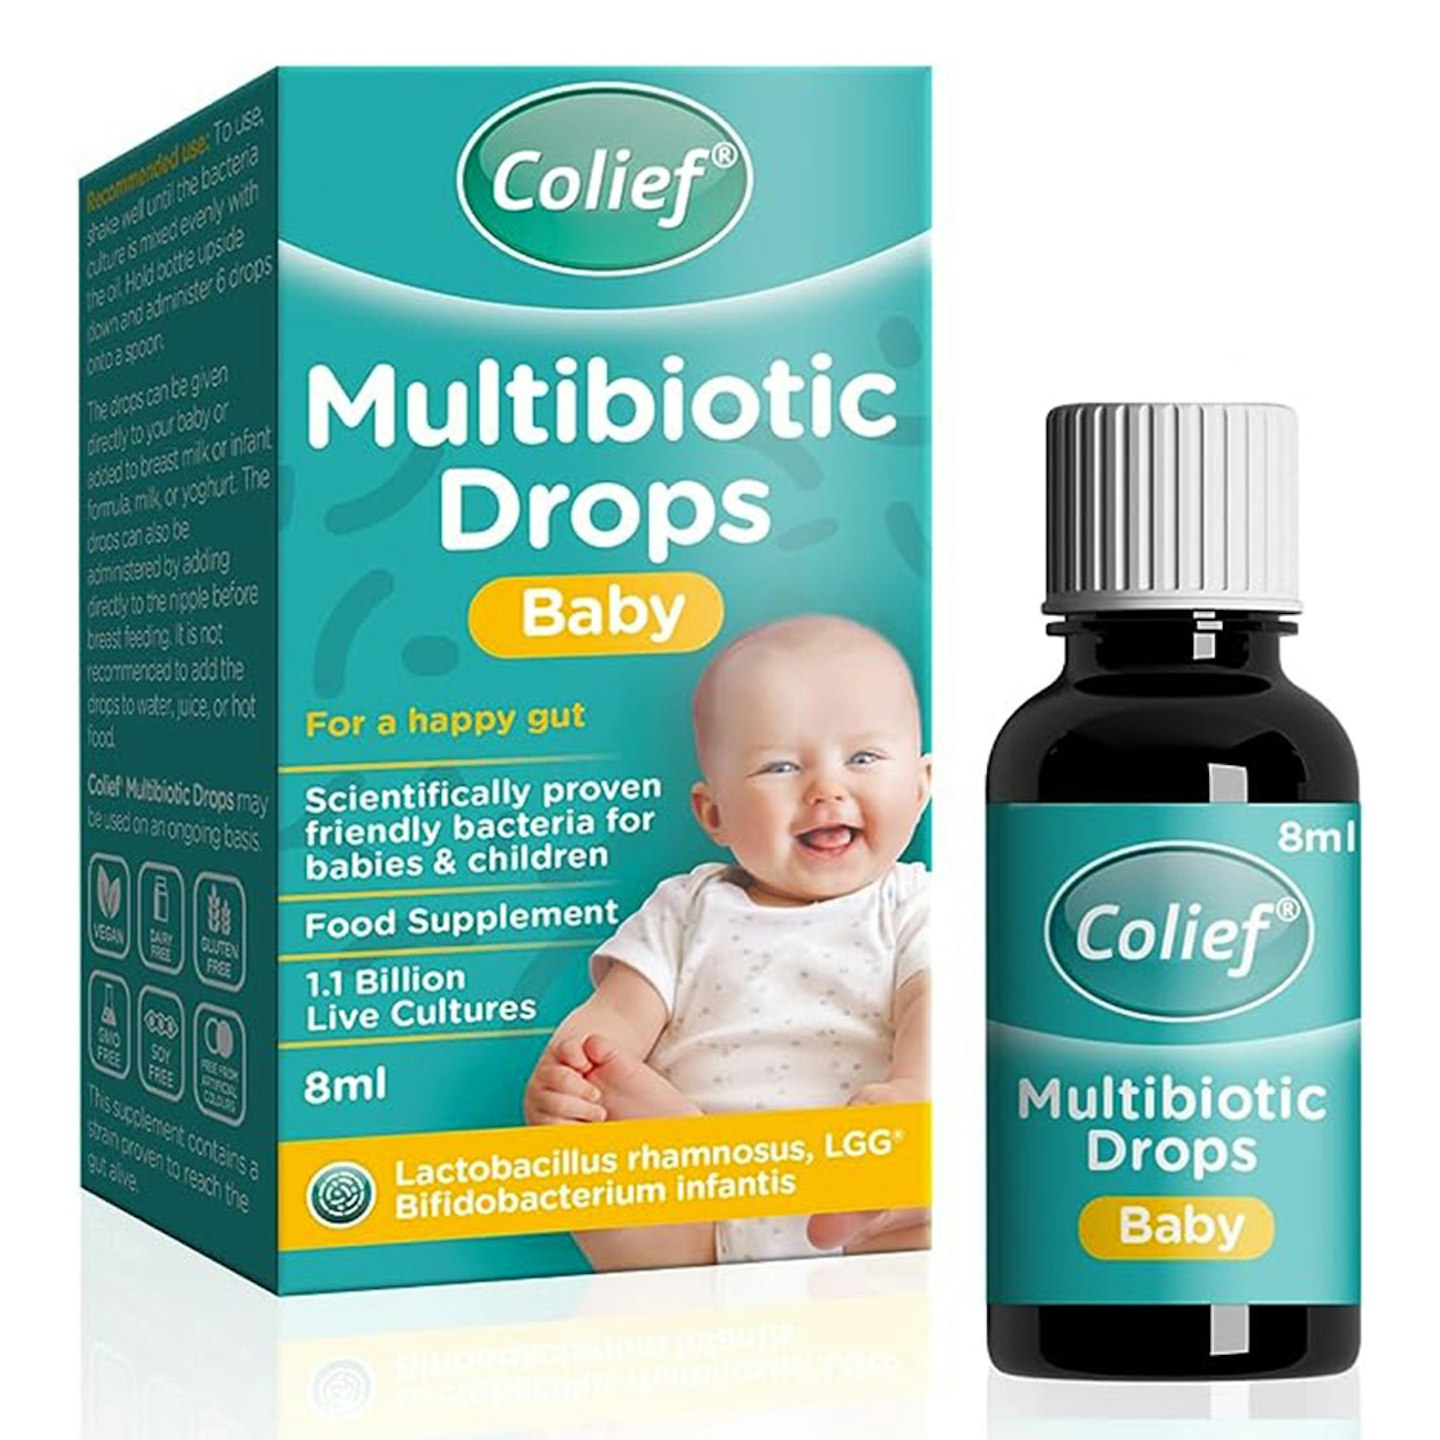 Colief Multibiotic Drops Baby